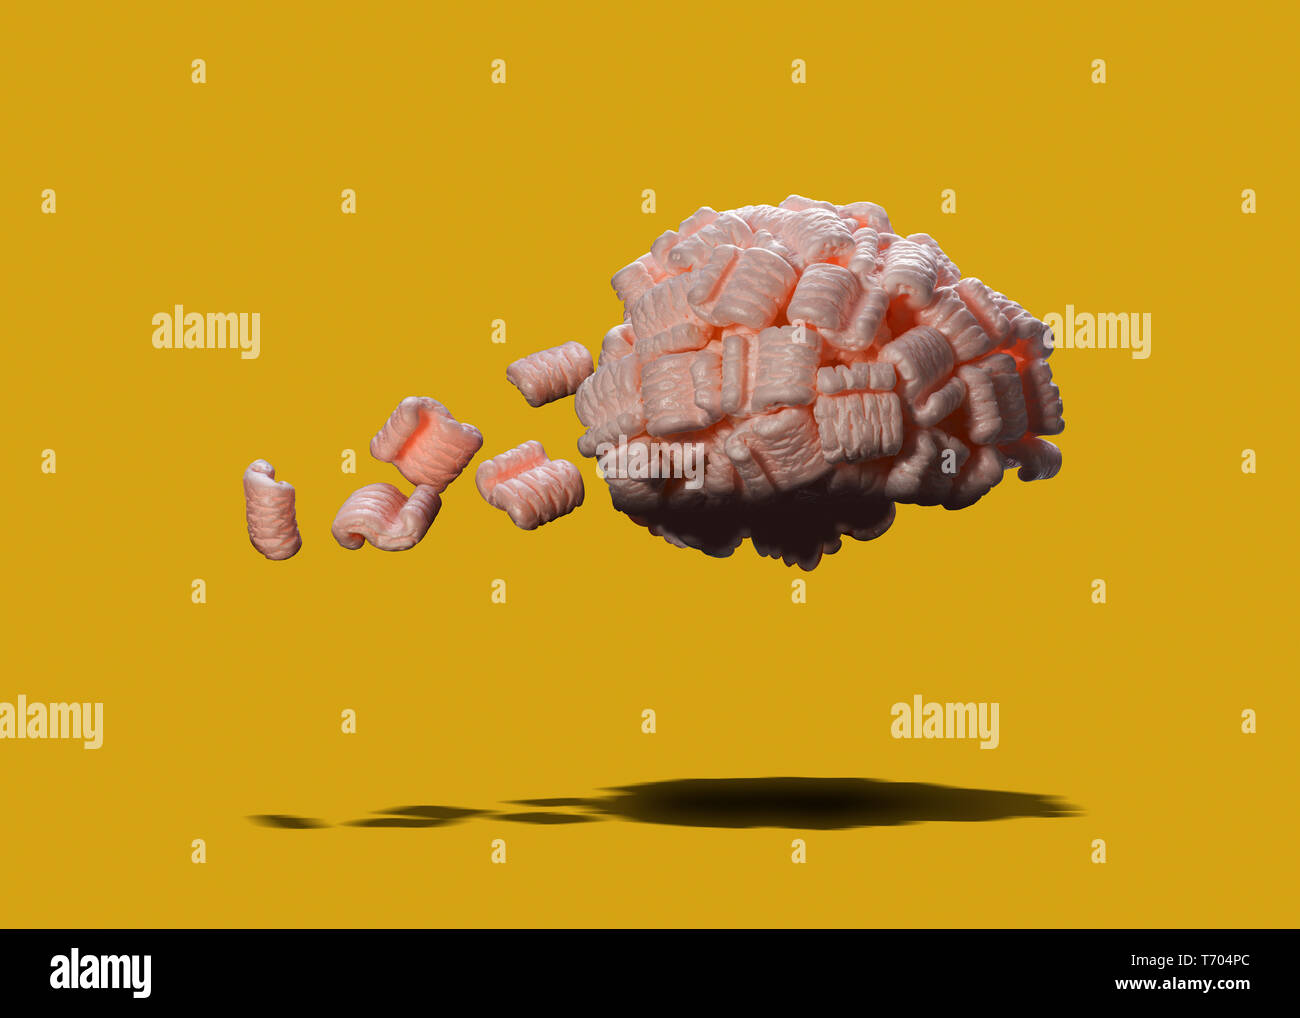 Concepto cerebro hechas de material de embalaje perder piezas, perder, pérdida de memoria, enfermedades cerebrales, daño cerebral, Foto de stock